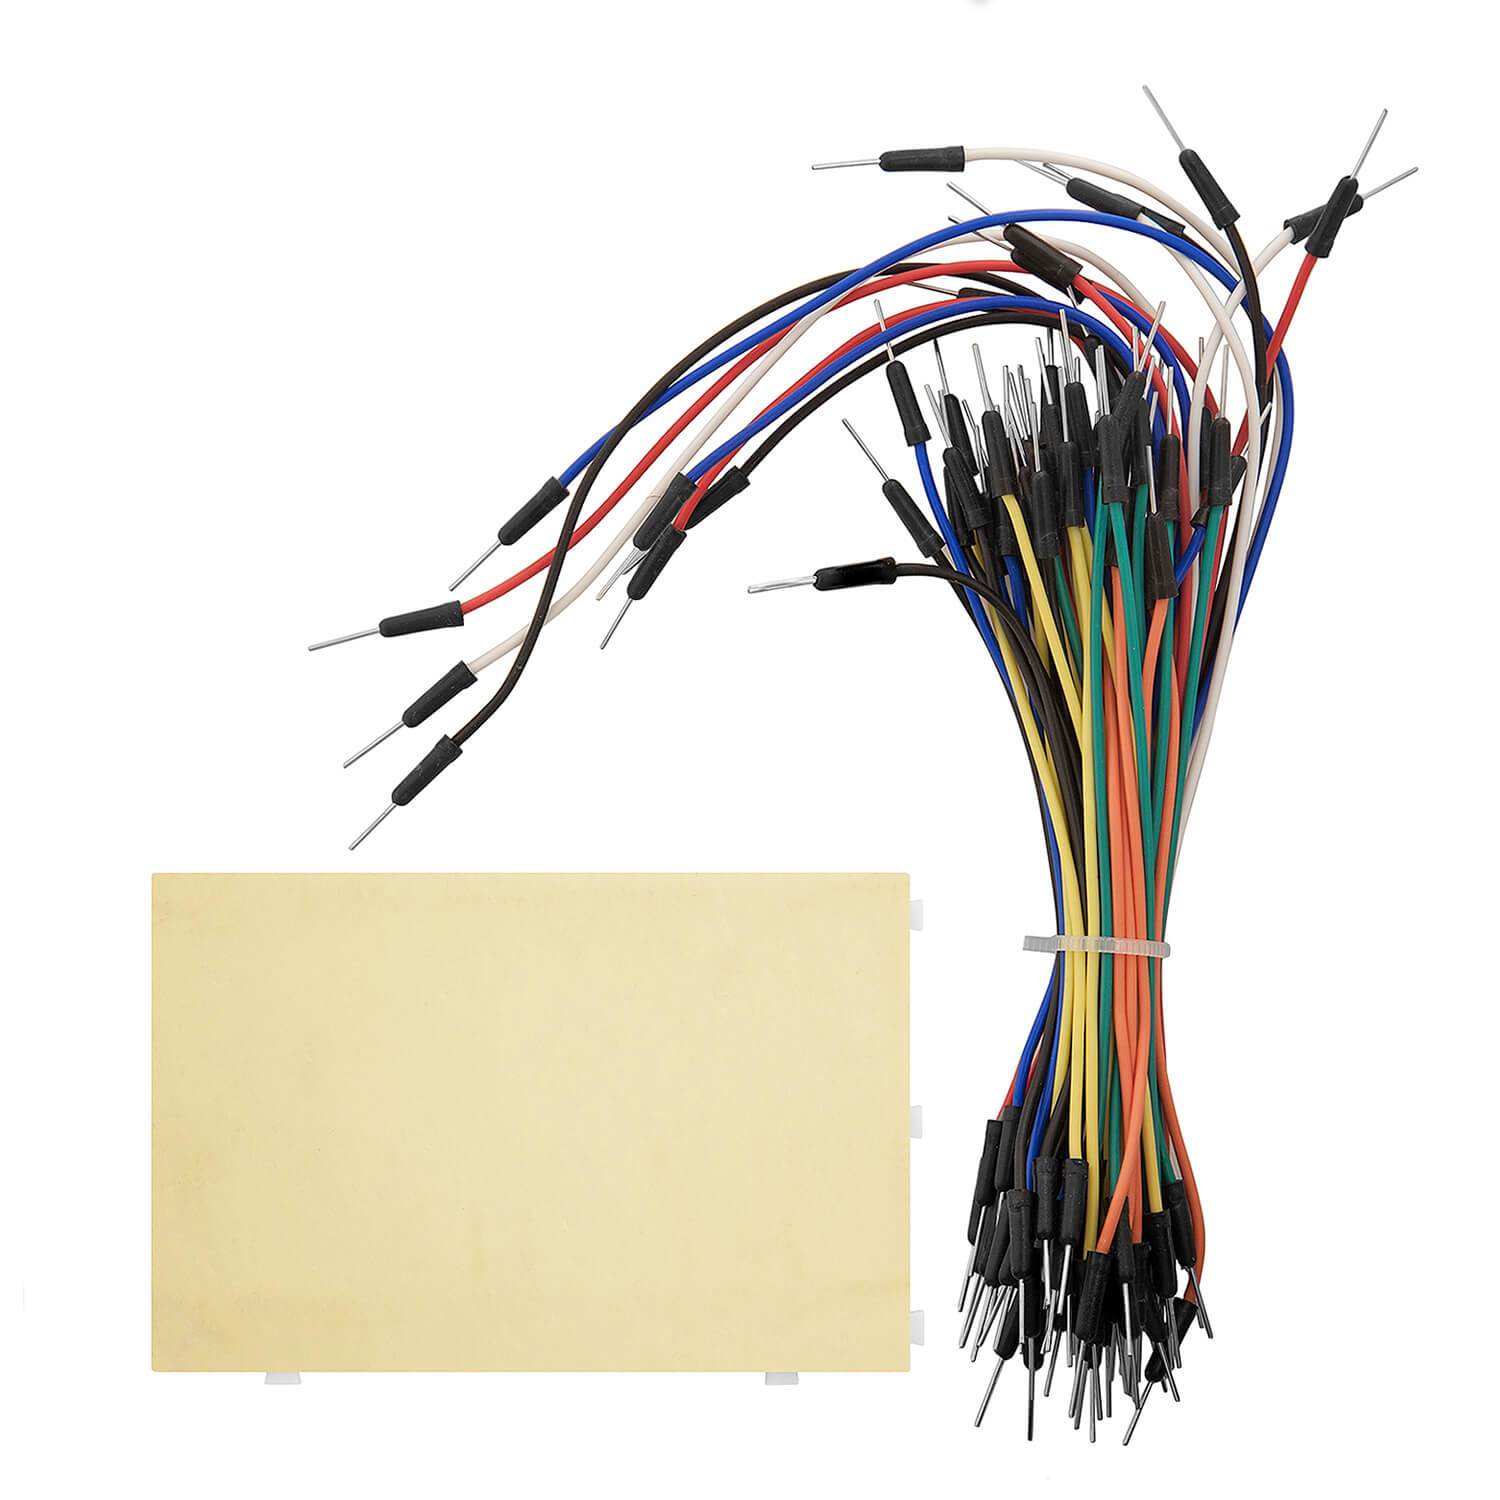 Jumper Kabel, UCEC Dupont Wires, 30-20-10 cm Breadboard Kabel,  Female-Female, Male-Female, Male-Male Jumper Wire für Arduino für Raspberry  Pi (9er Set) : : Computer & Zubehör